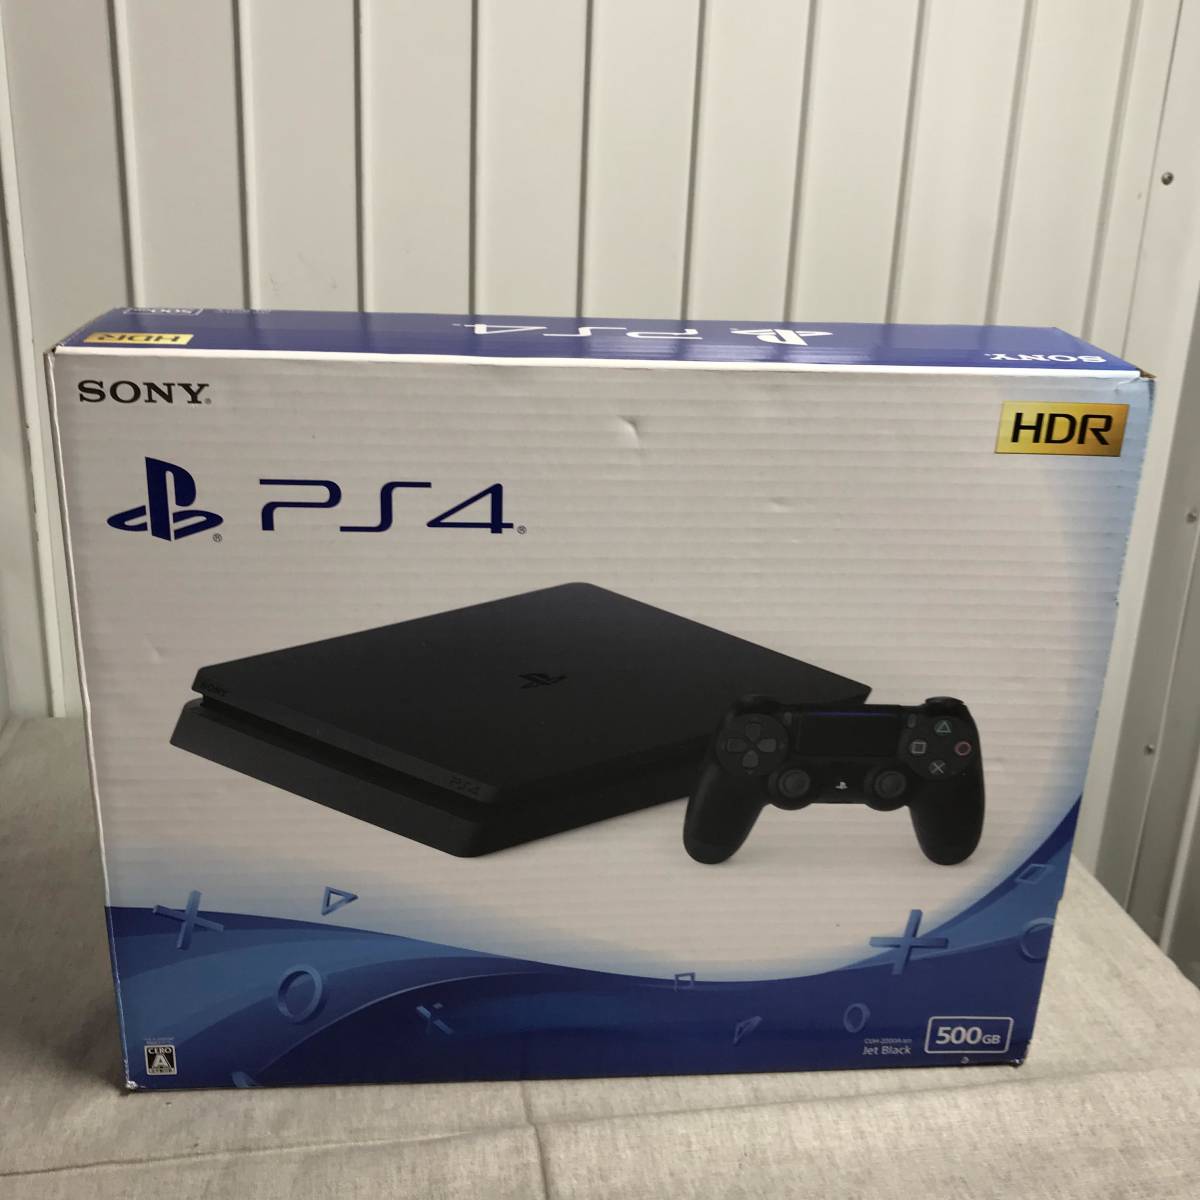 PlayStation 4 ジェット・ブラック 500GB (CUH-2200AB01) - www.shoppingdasbaterias.com